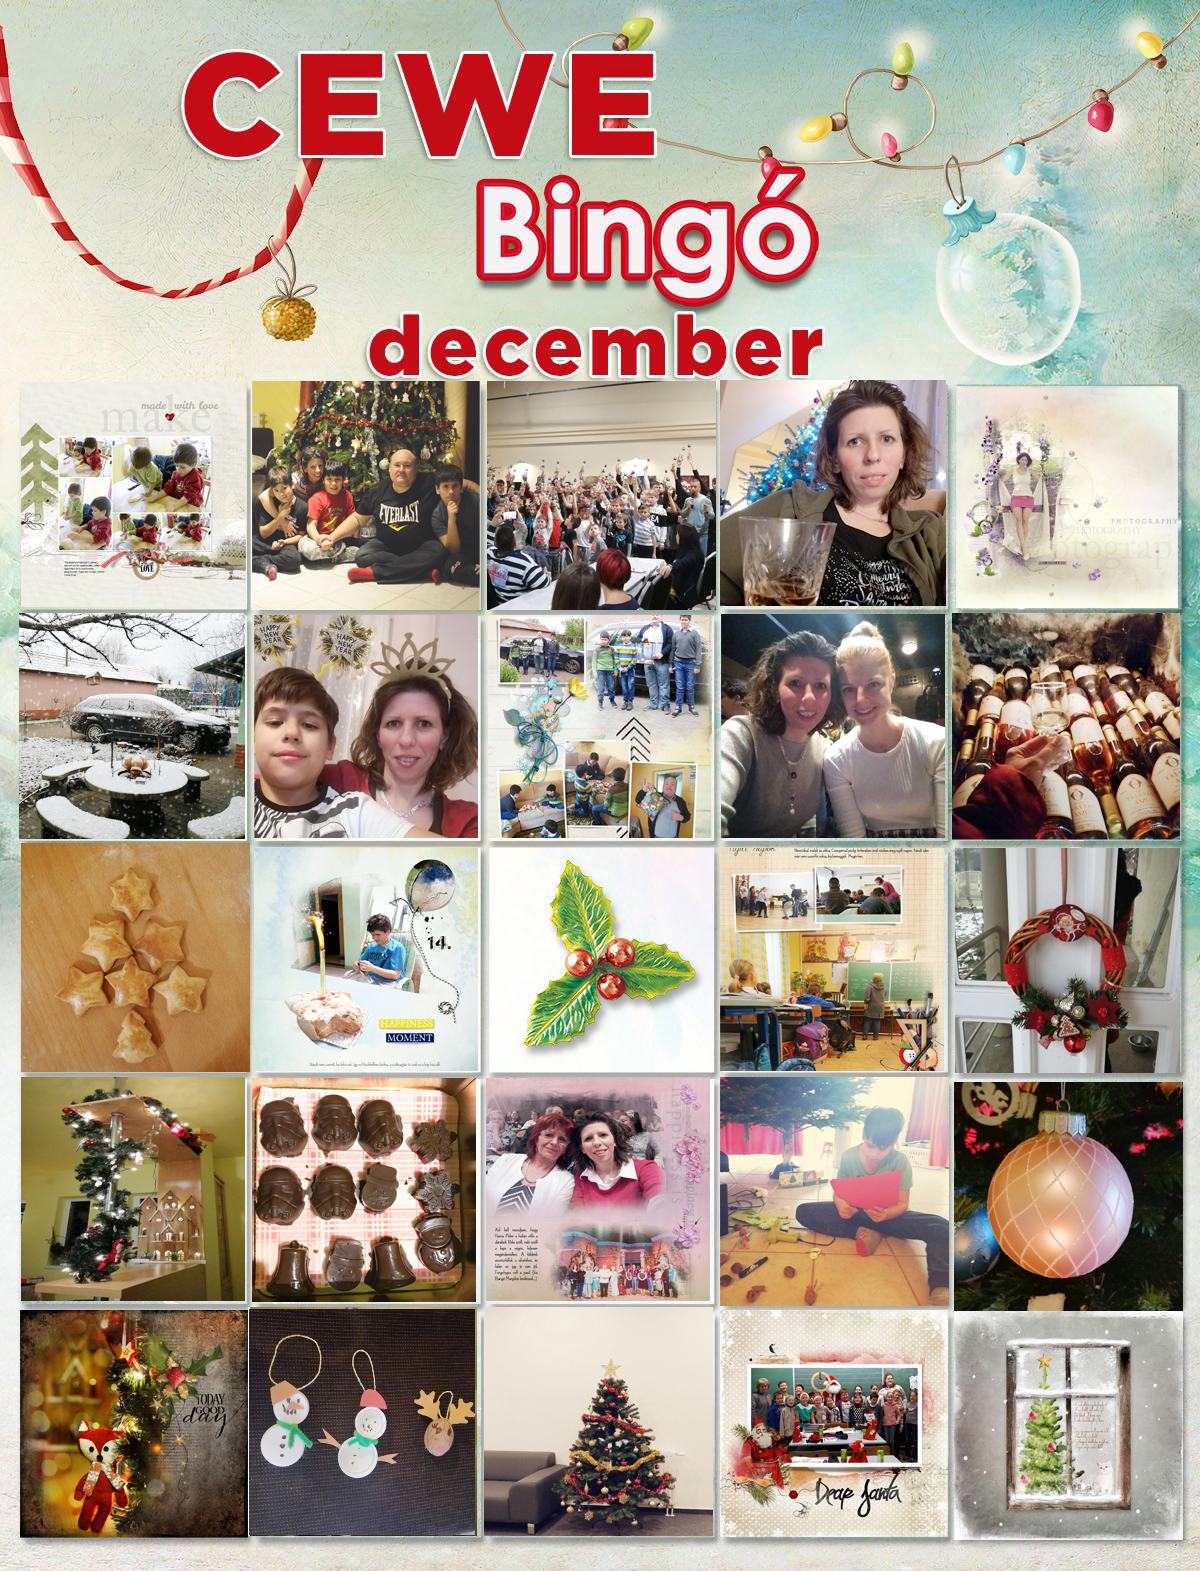 24-es bingo december